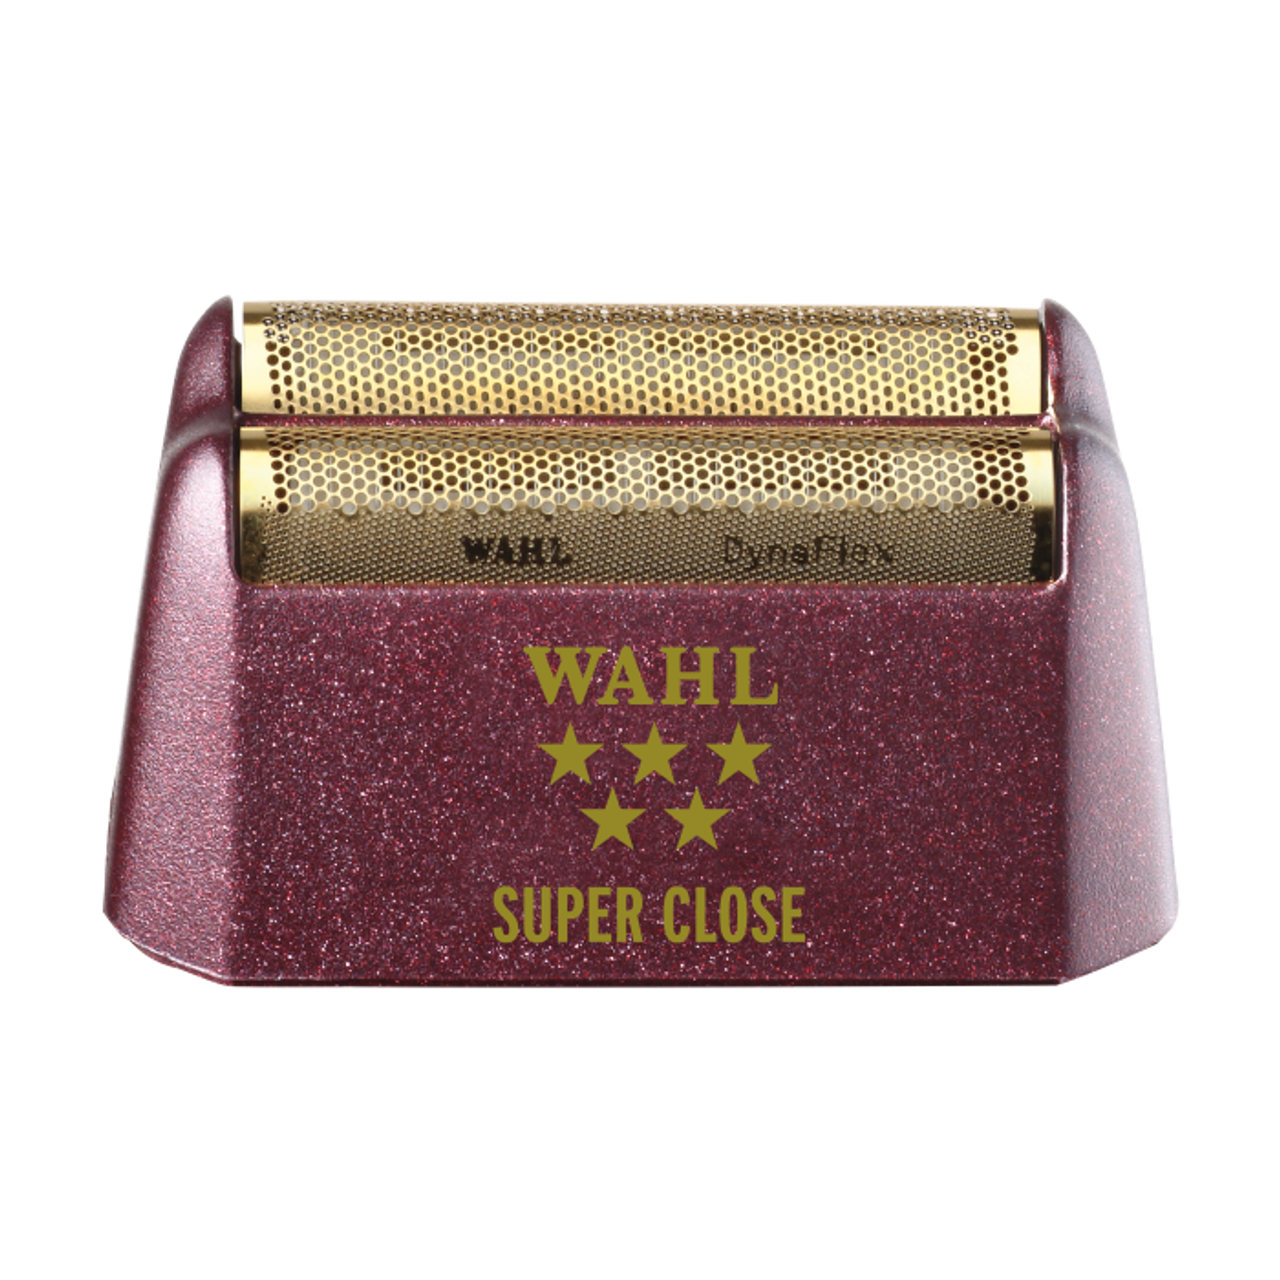 wahl gold foil shaver